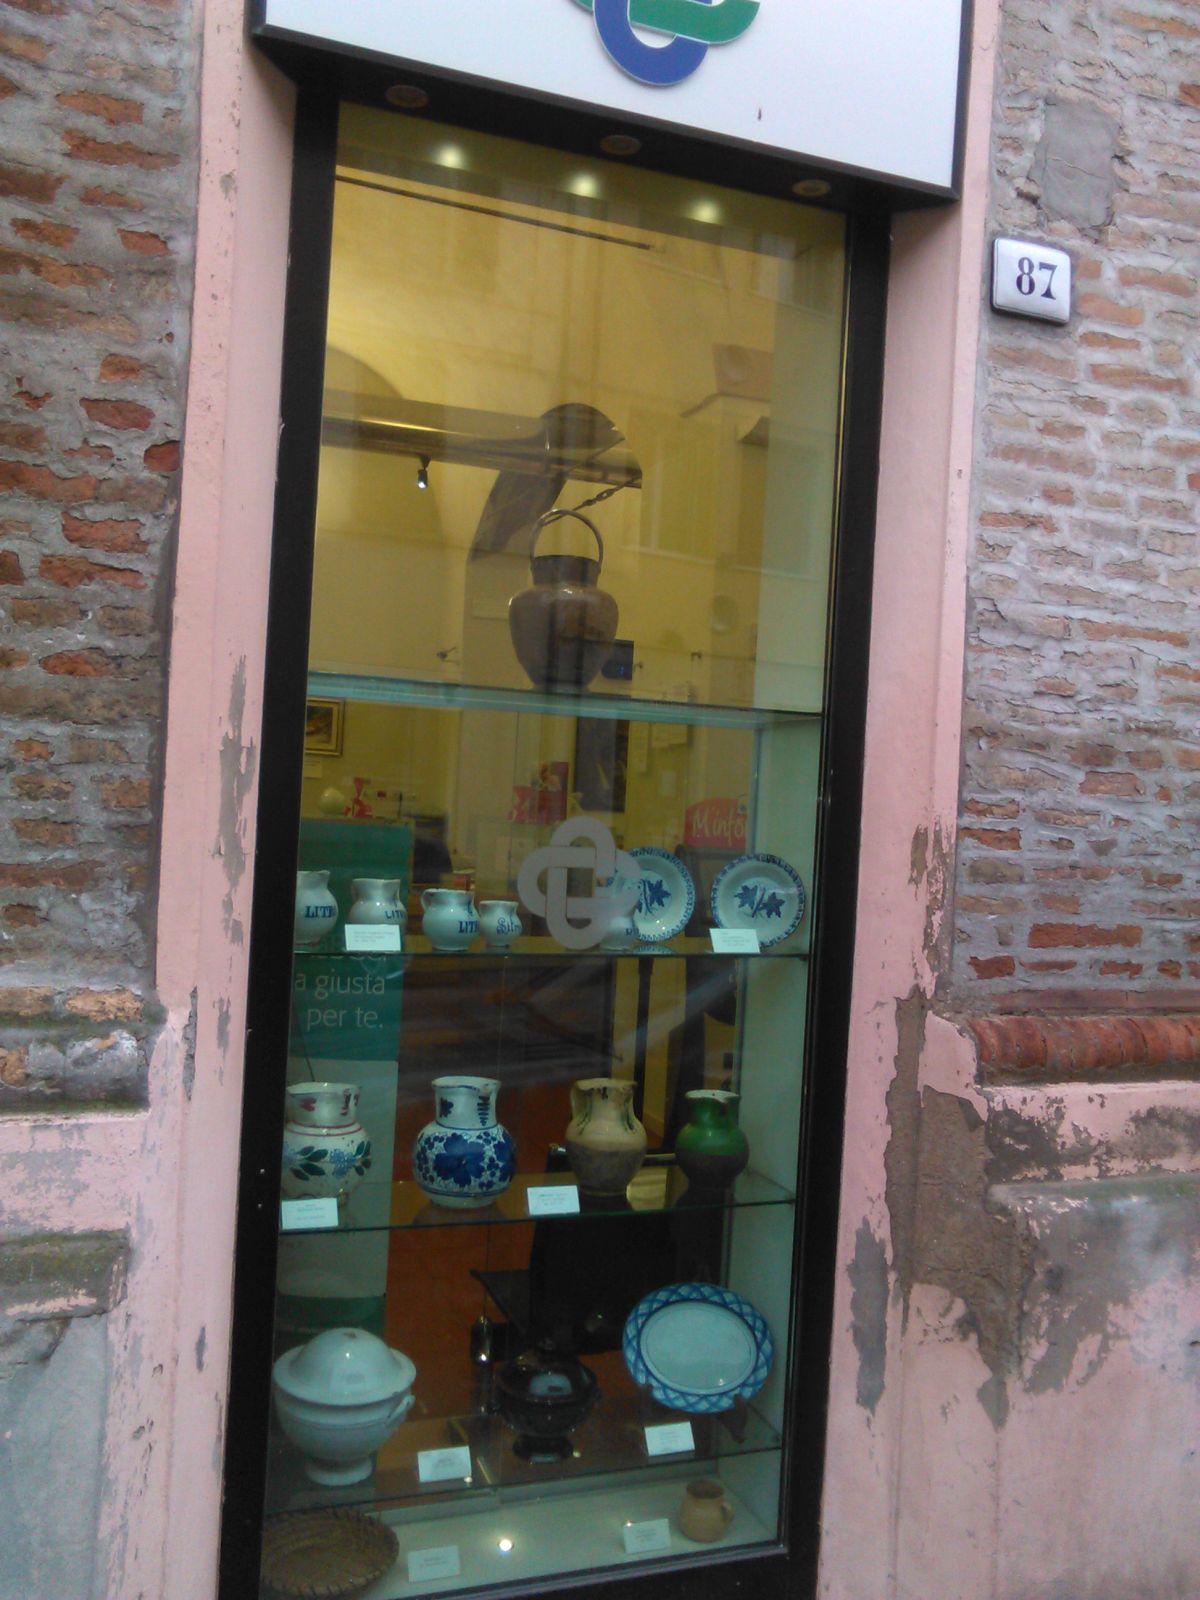 La mostra allestita presso la filiale LA BCC Faenza borgo in Corso Europa